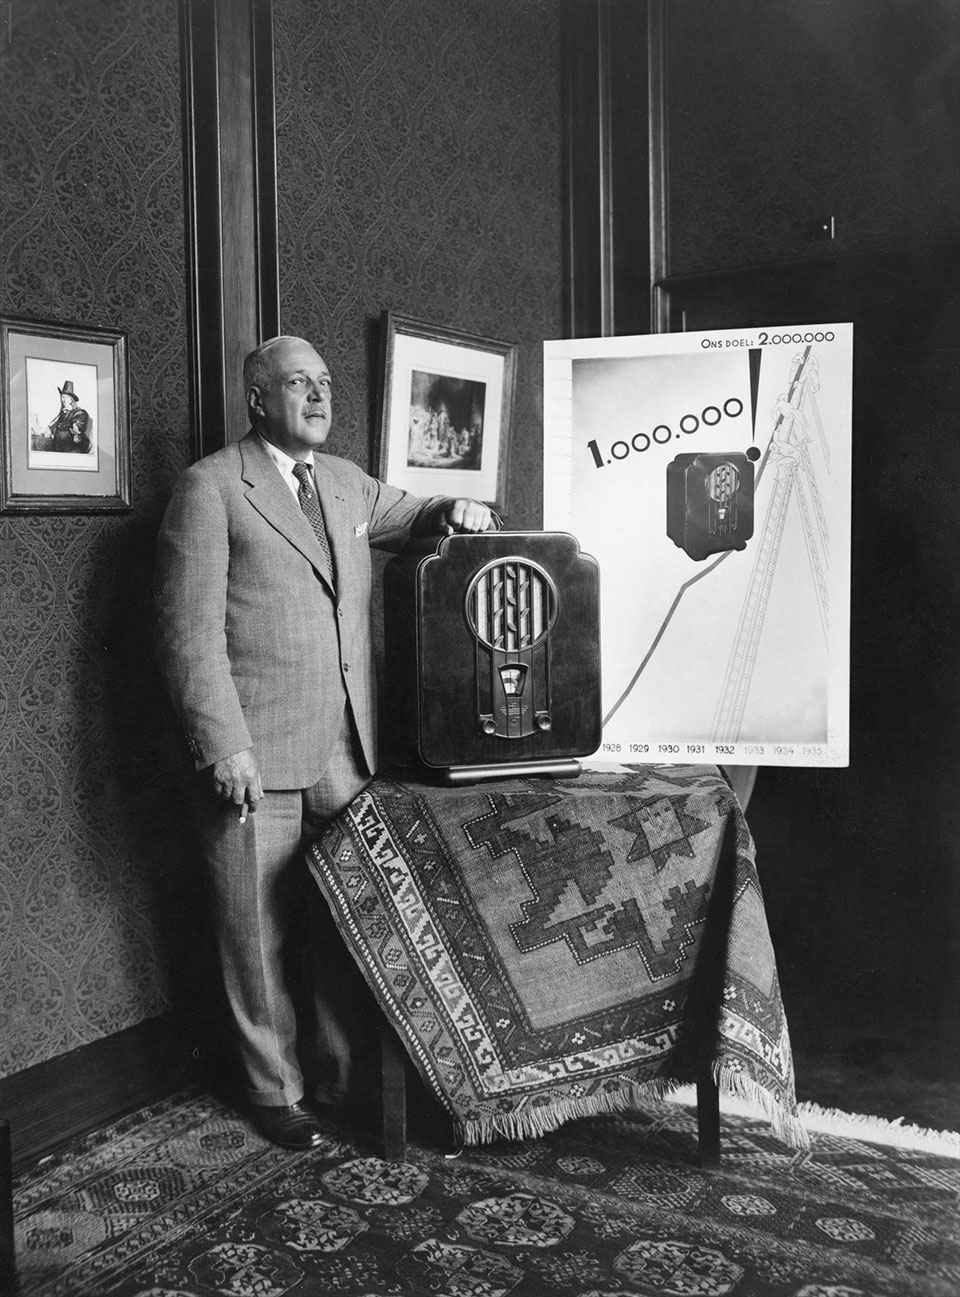 De miljoenste radio geproduceerd (1932)